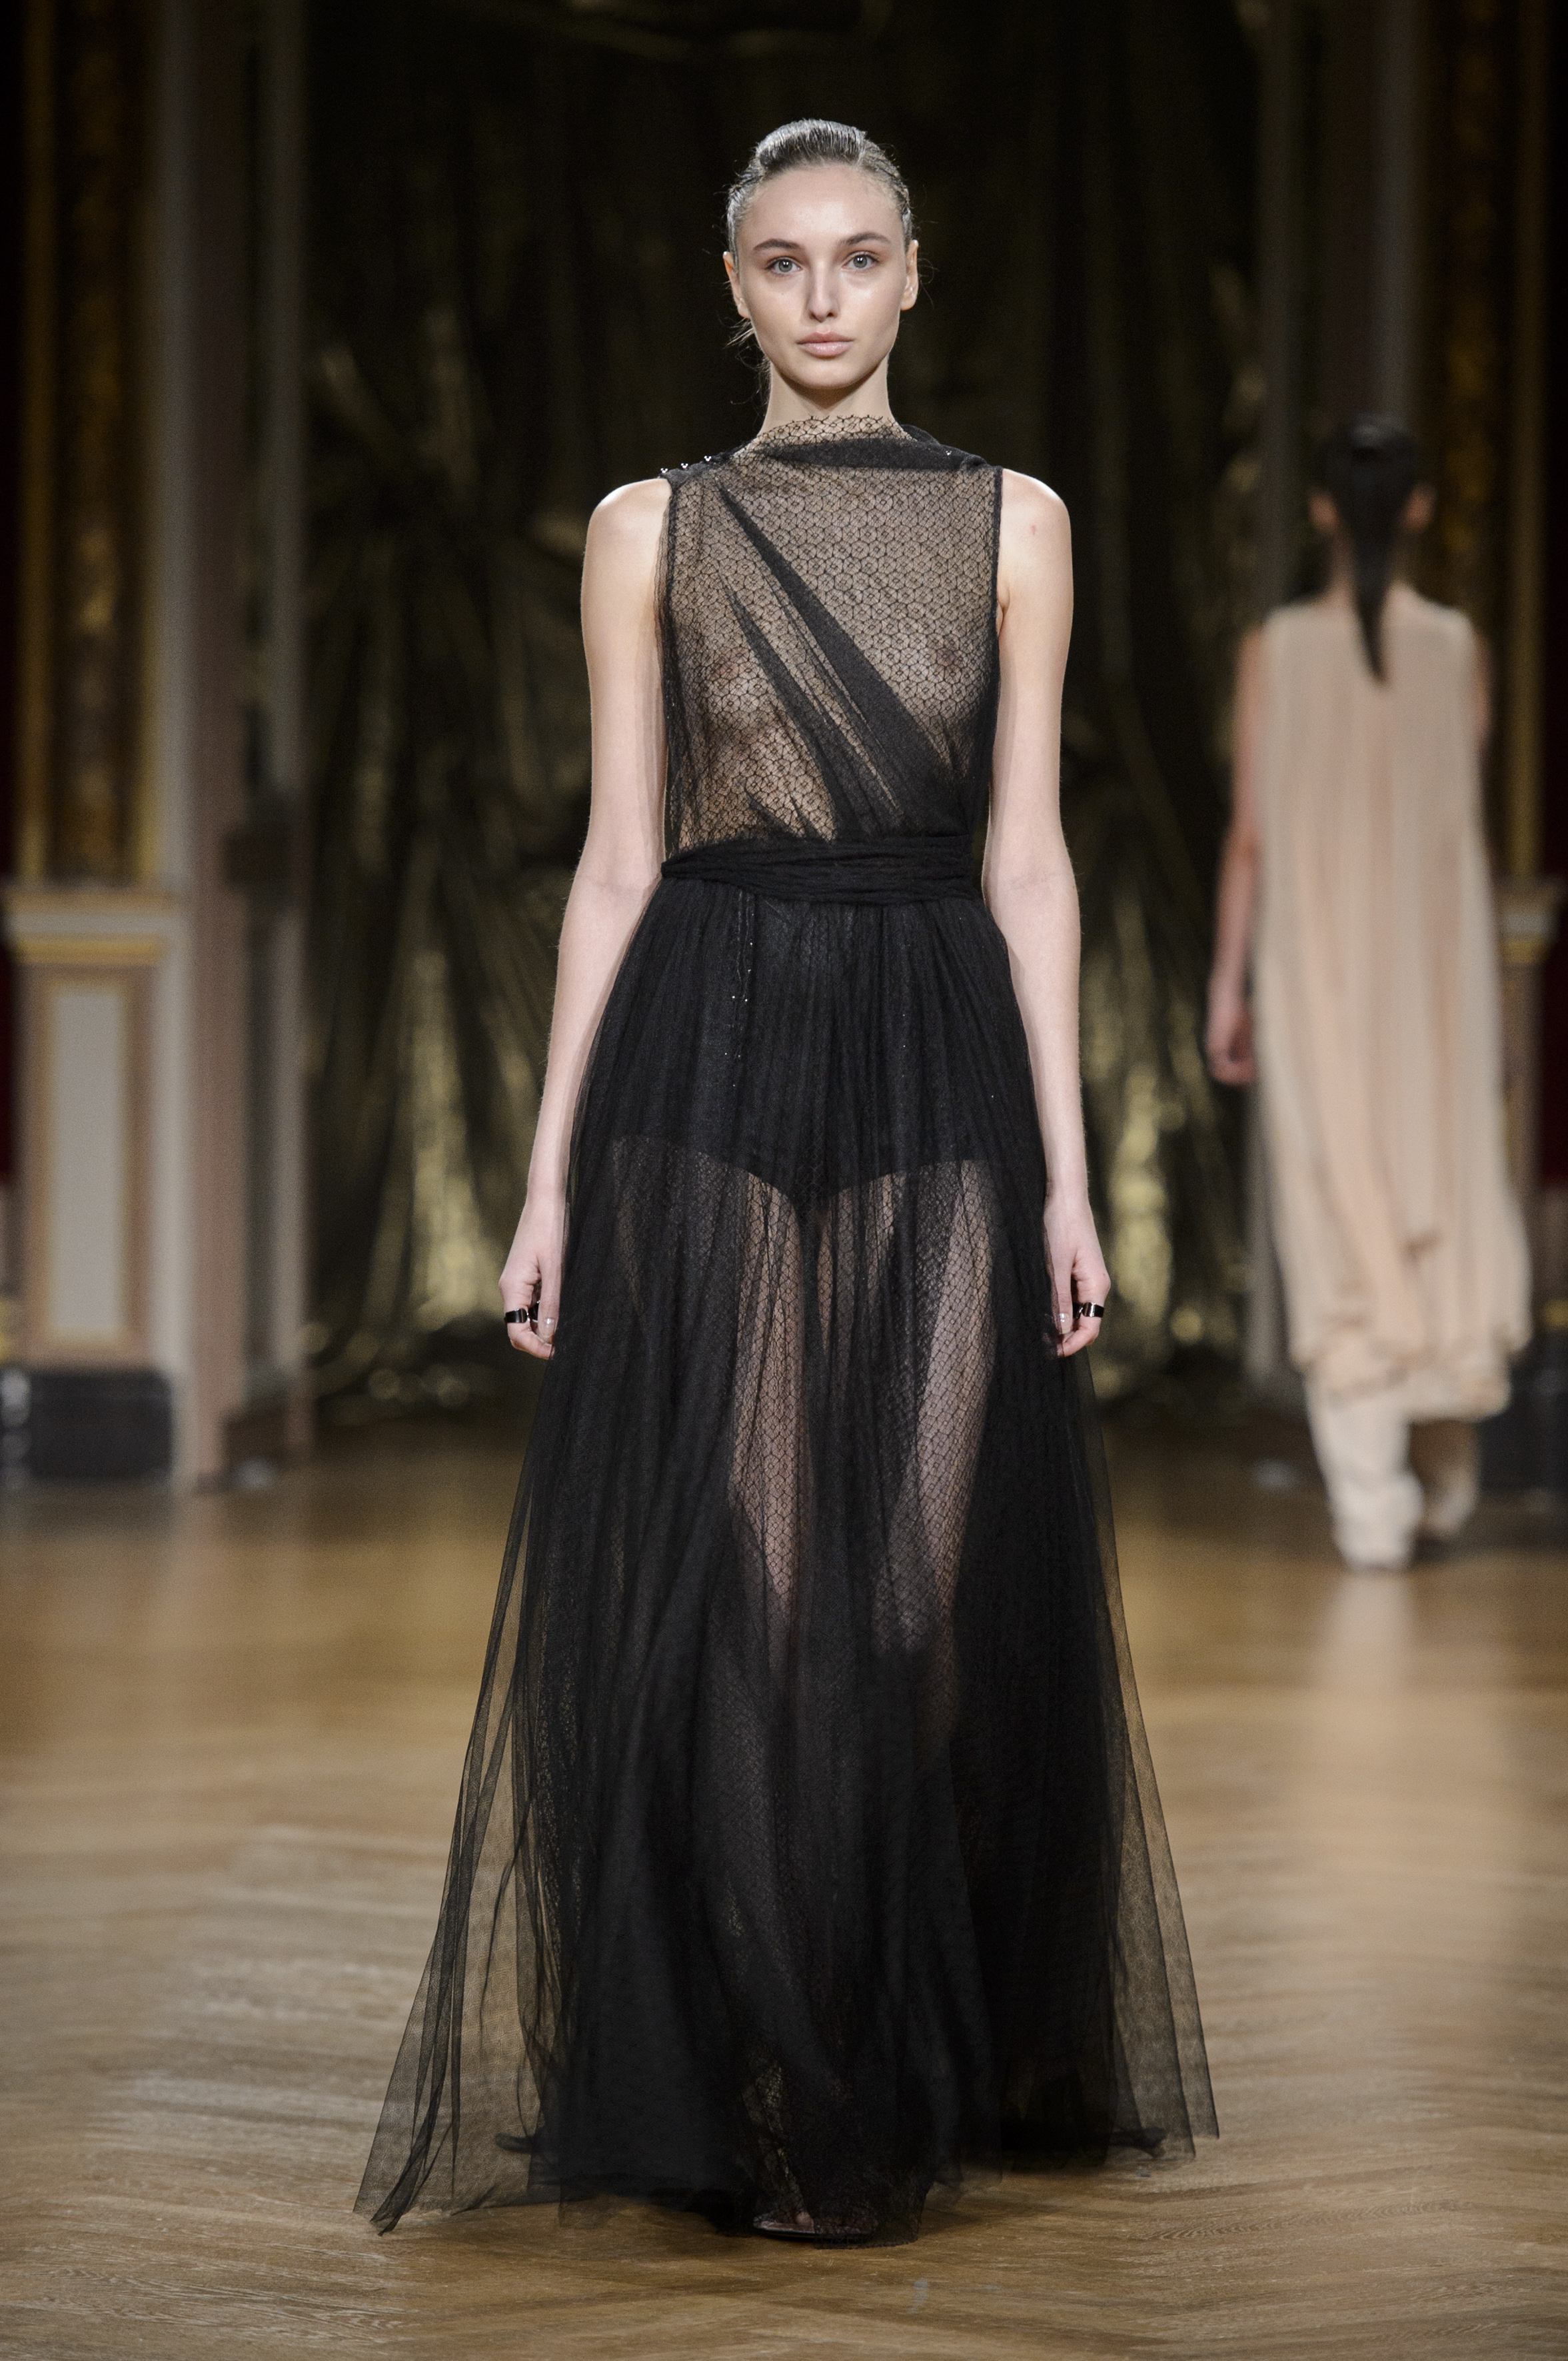 ANTONIO GRIMALDI Haute Couture SS17 : an ode to passionate LOVE - ZOE ...